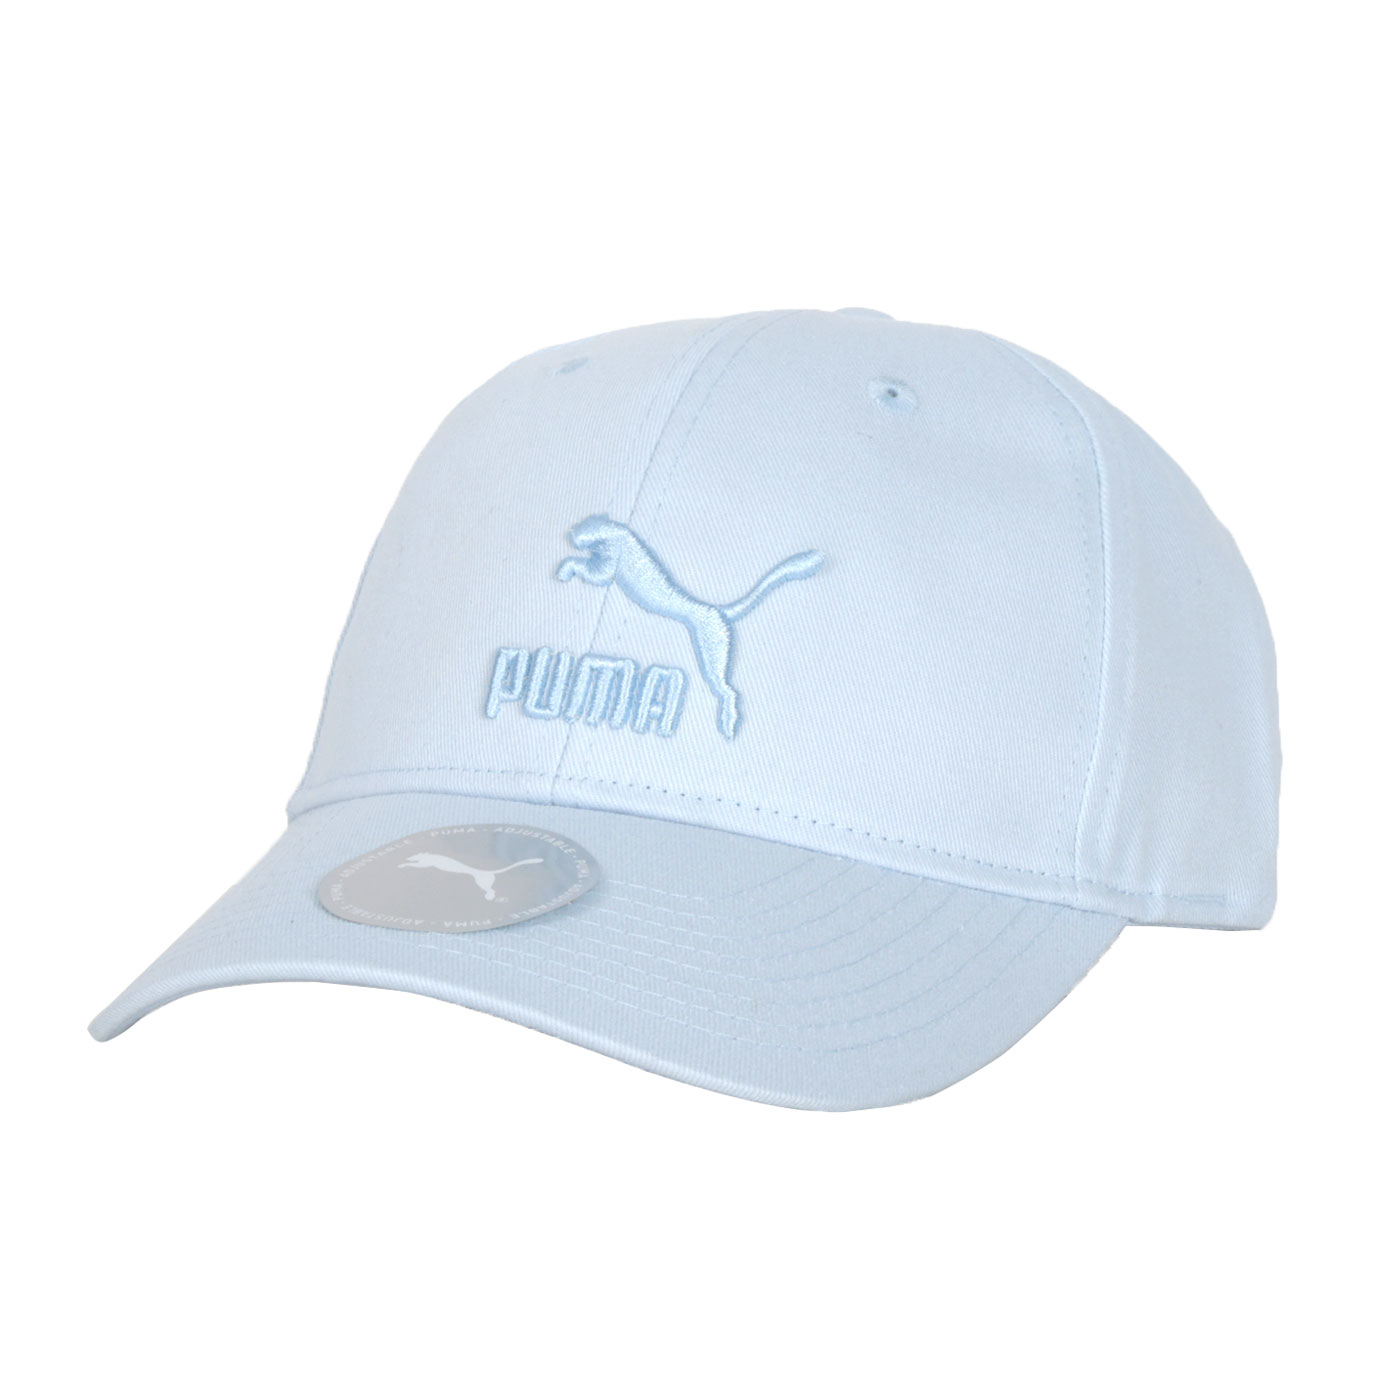 PUMA 棒球帽  02255424 - 夢幻藍